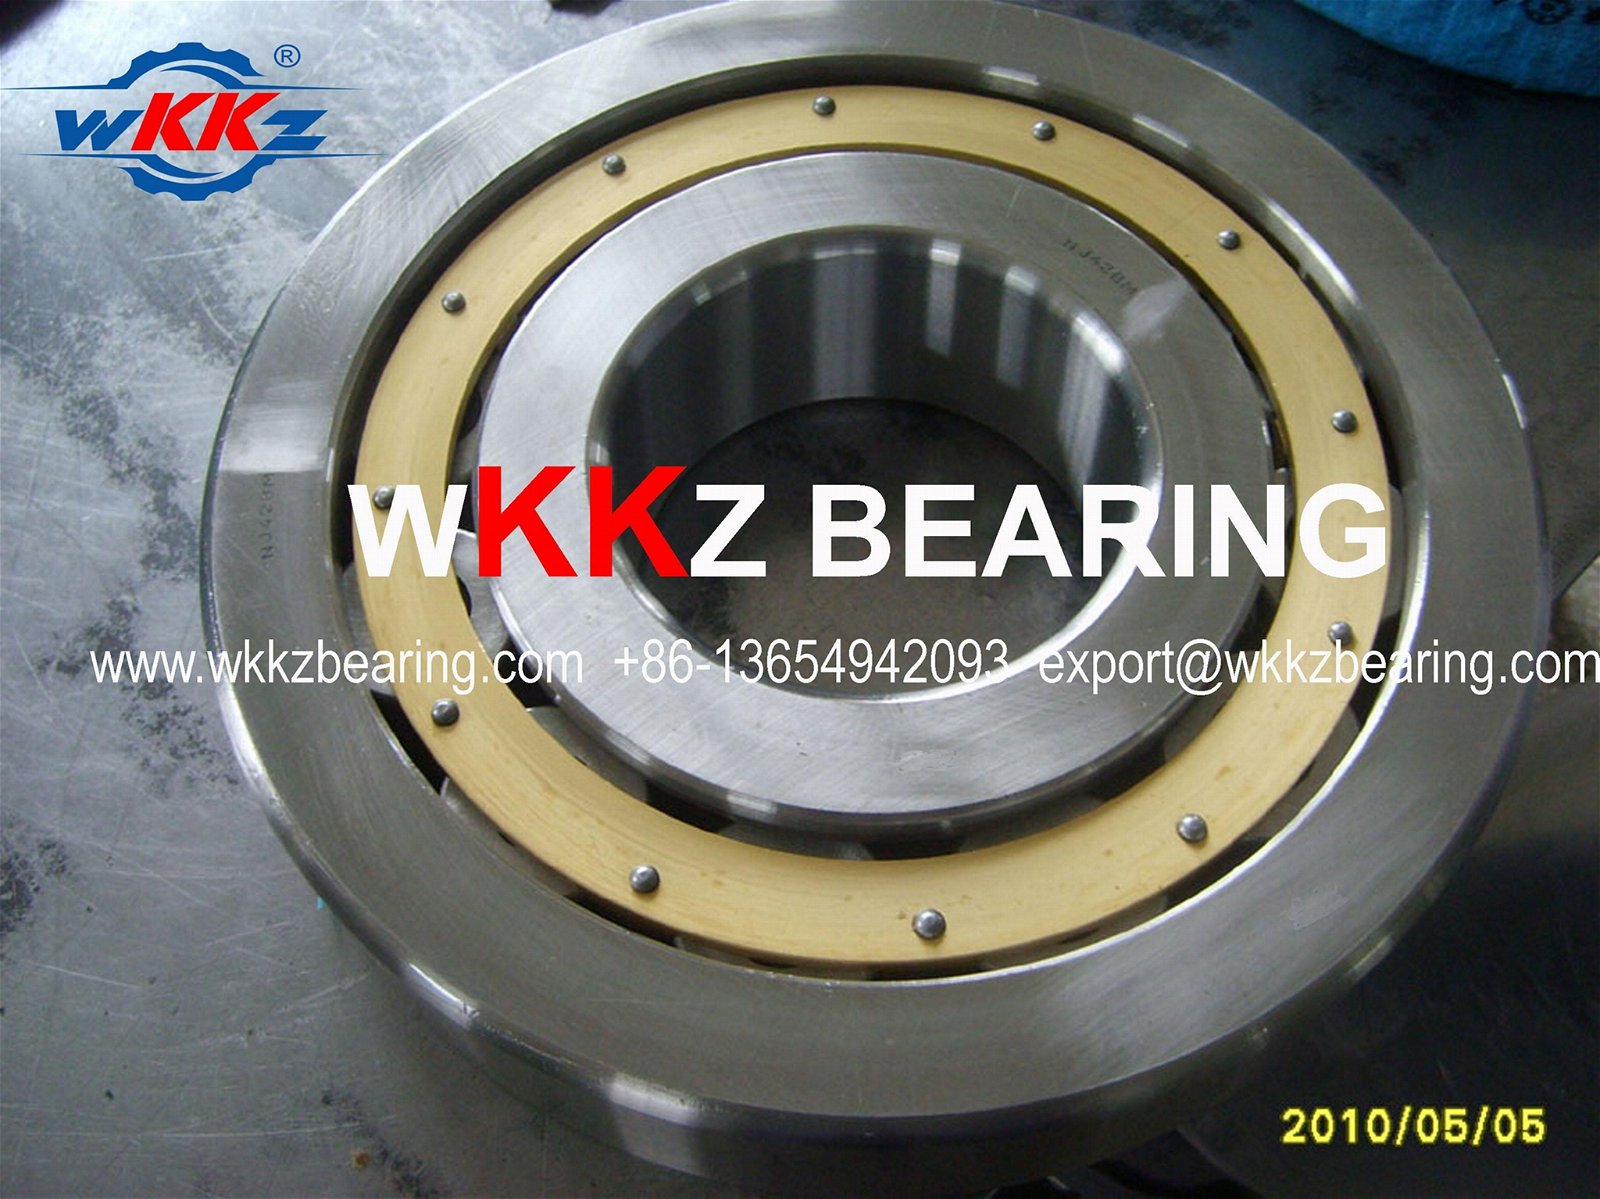 N315EMC3 Cylindrical roller bearing,WKKZ BEARING